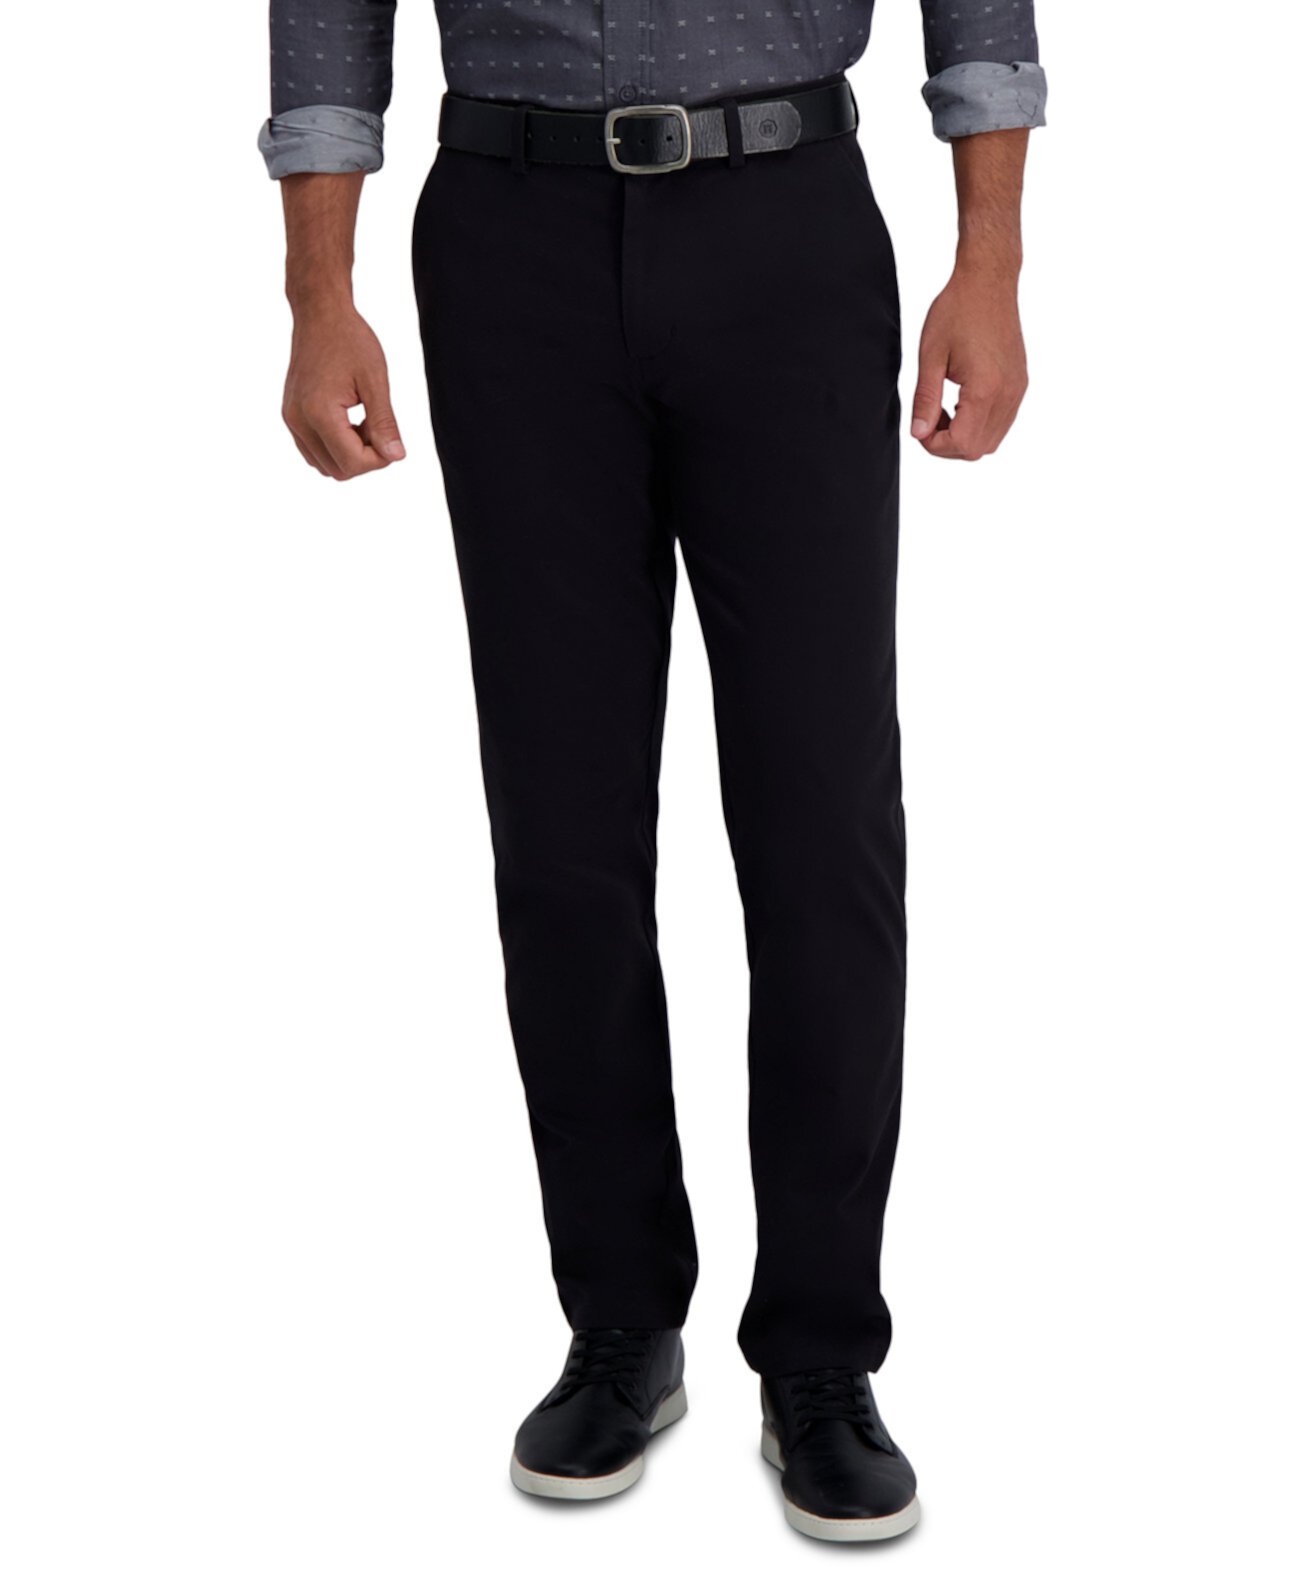 Мужские повседневные брюки Slim-Fit Motion цвета хаки с прямым гибким поясом HAGGAR